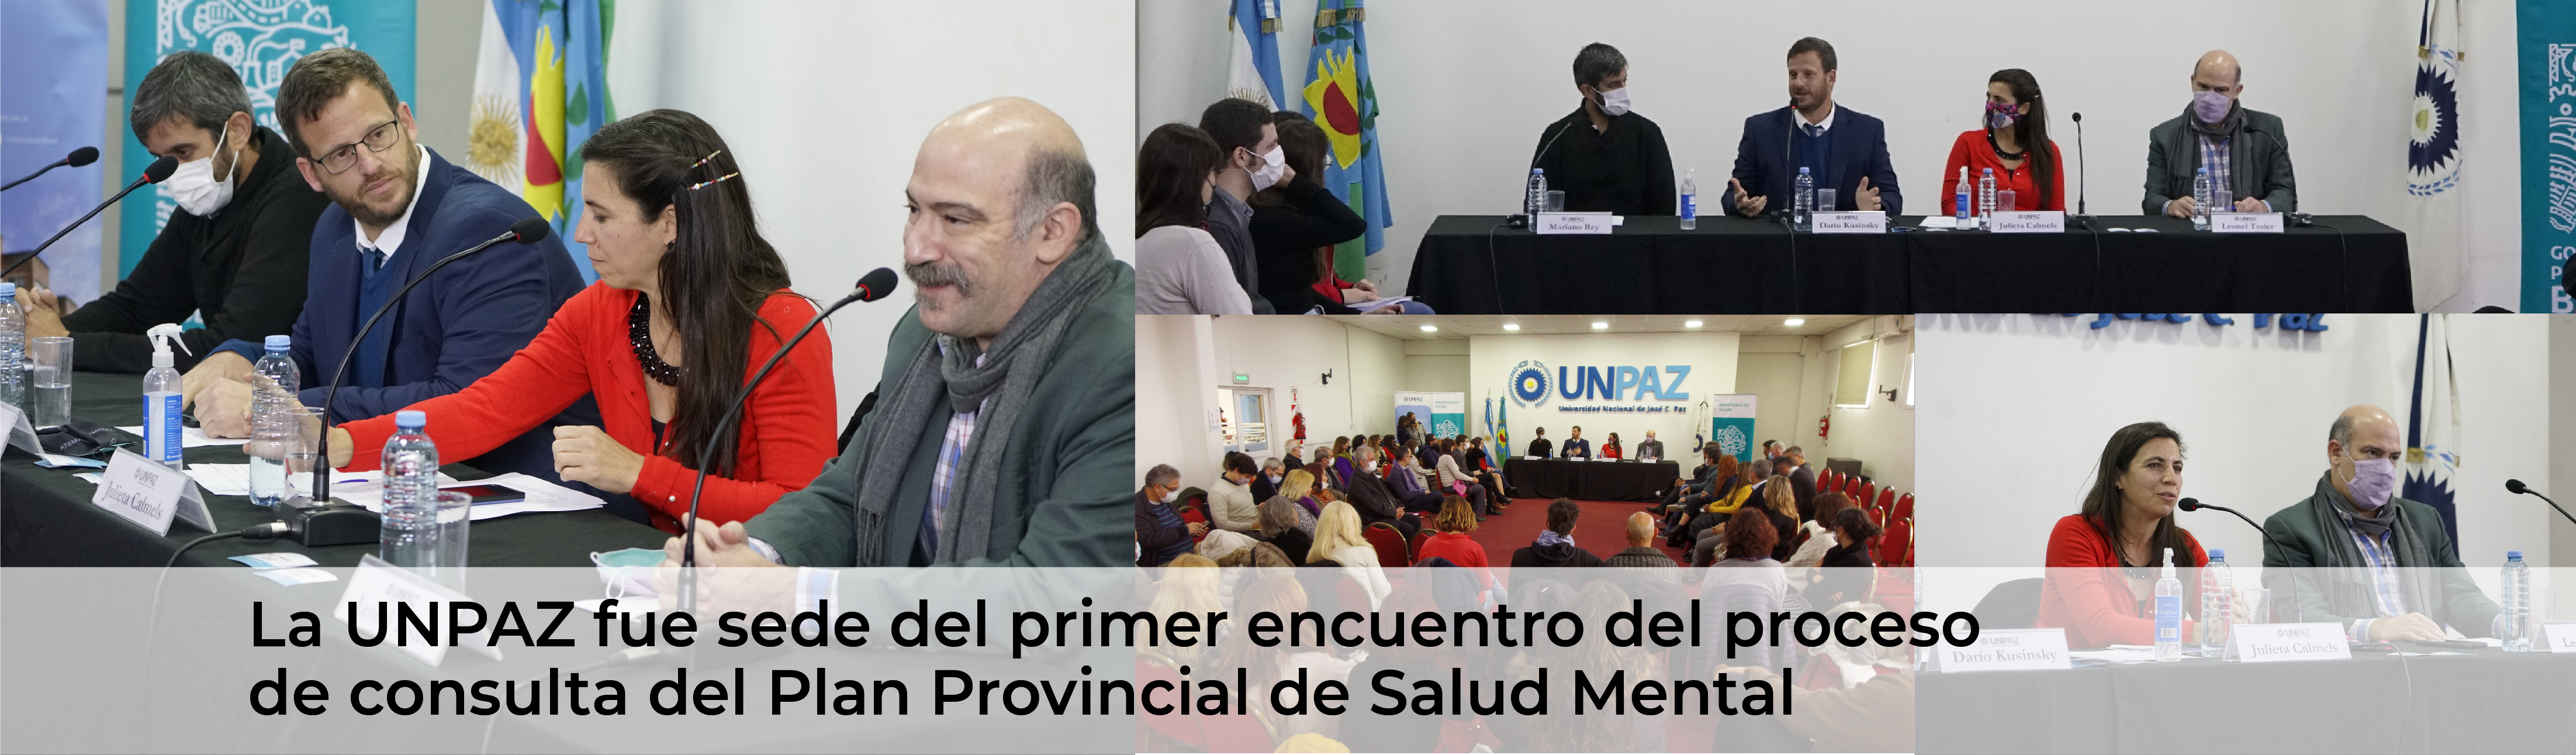 La UNPAZ fue sede del primer encuentro del proceso de consulta del Plan Provincial de Salud Mental 